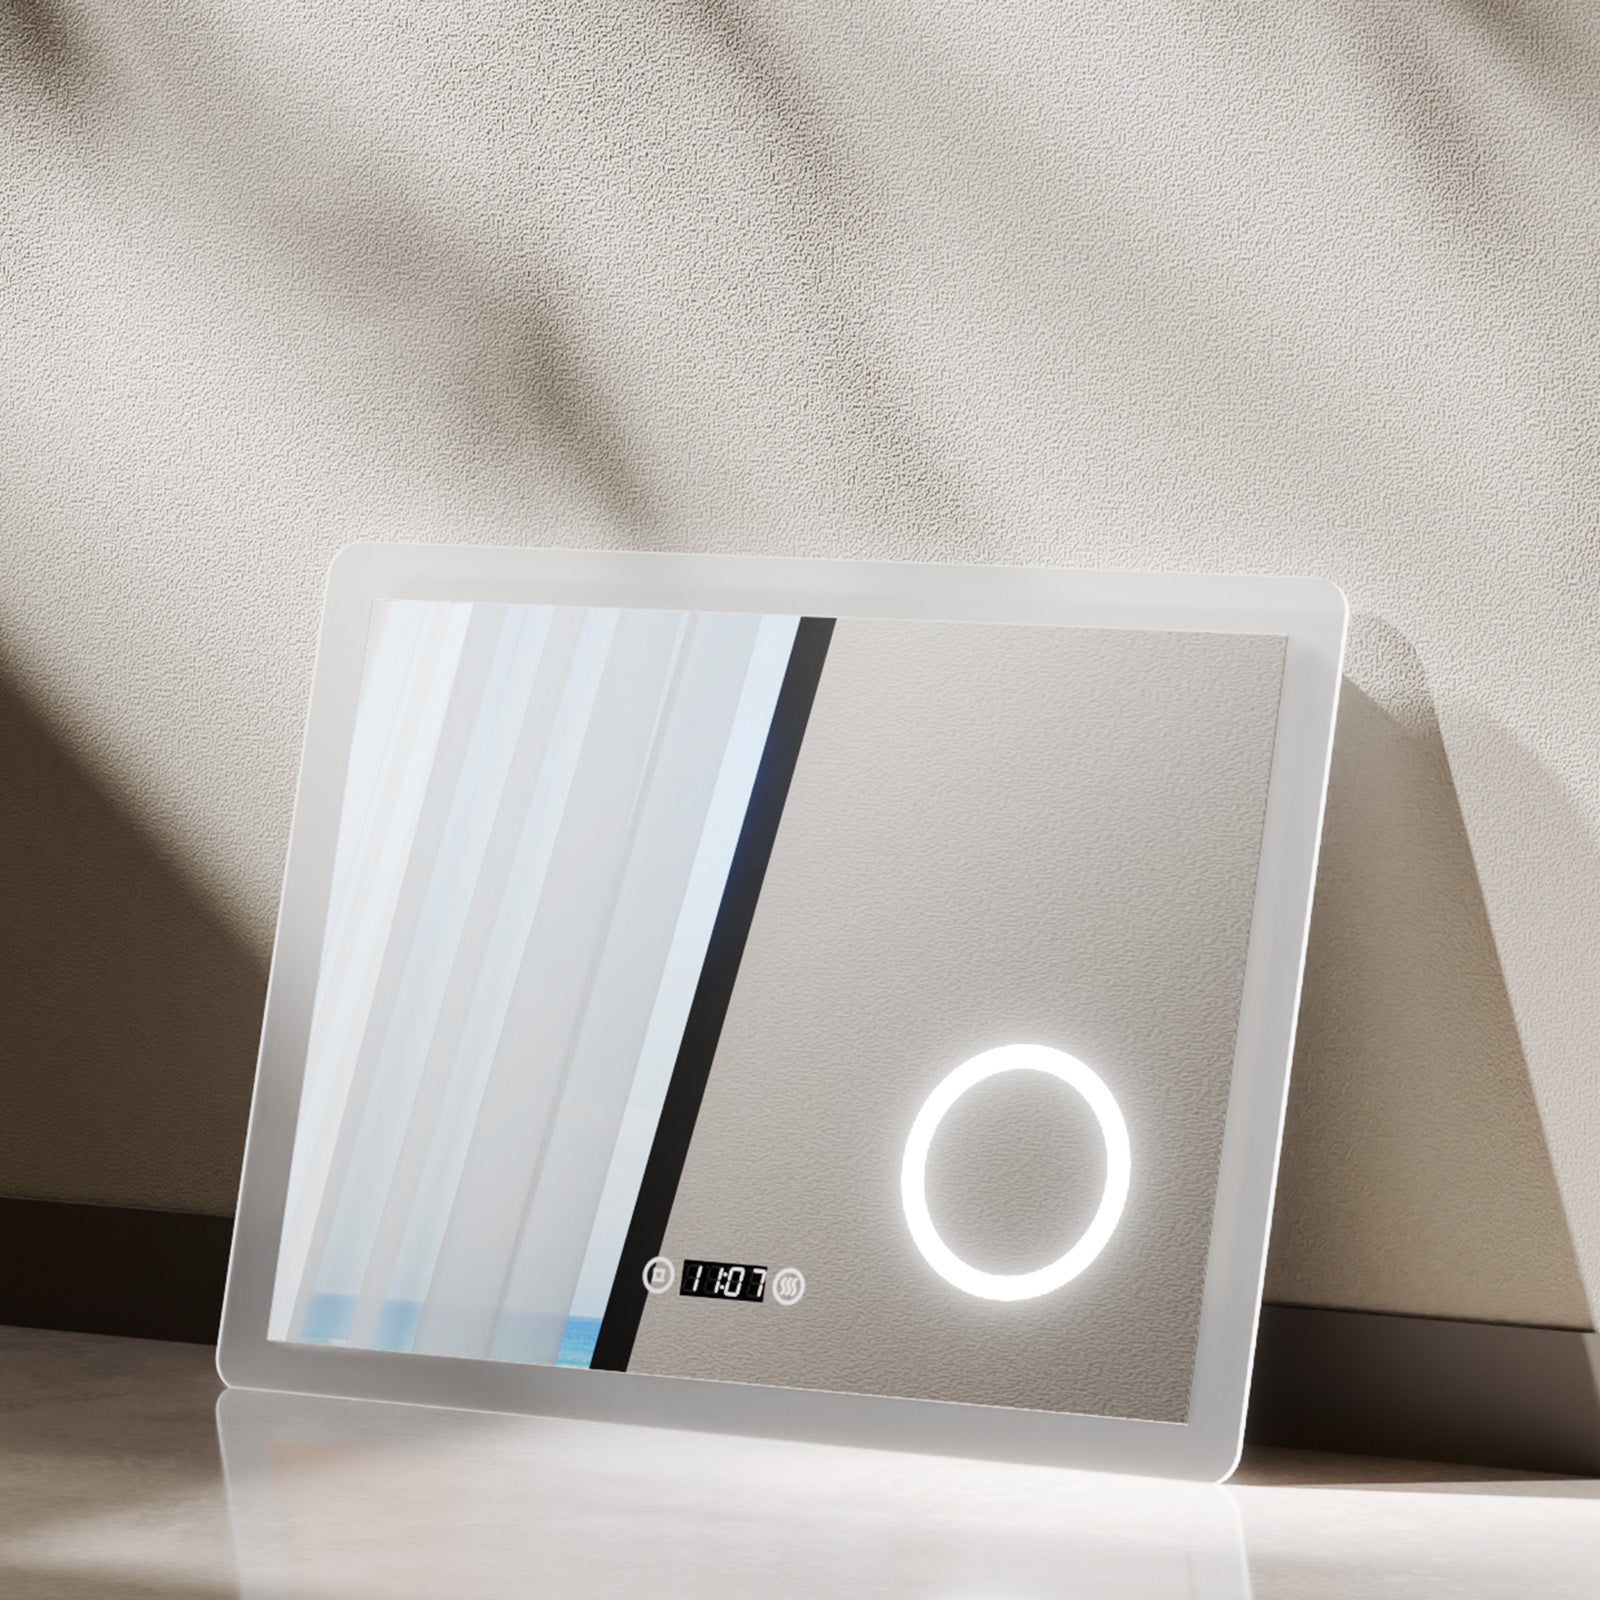 EMKE LED Spiegel „LeeMi πX Plus“ 80x60cm, Touch, Dimmbar, 3 Lichtfarben, Beschlagfrei, Vergrößerungsspiegel, Uhr